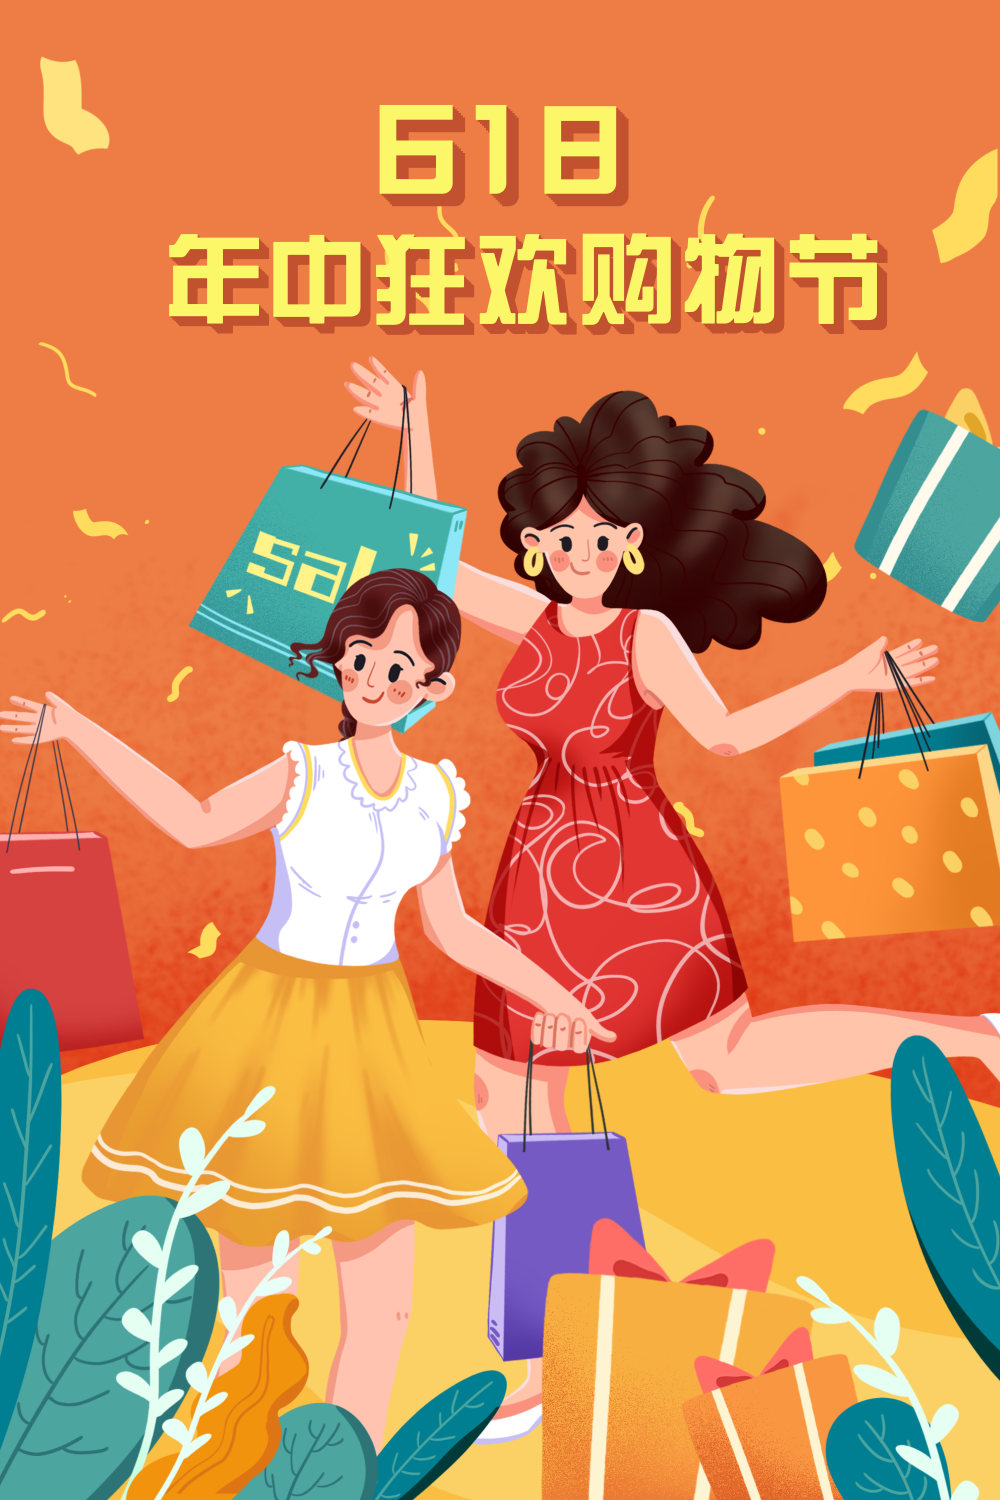 橙色扁平风6.18促销活动购物节插画海报